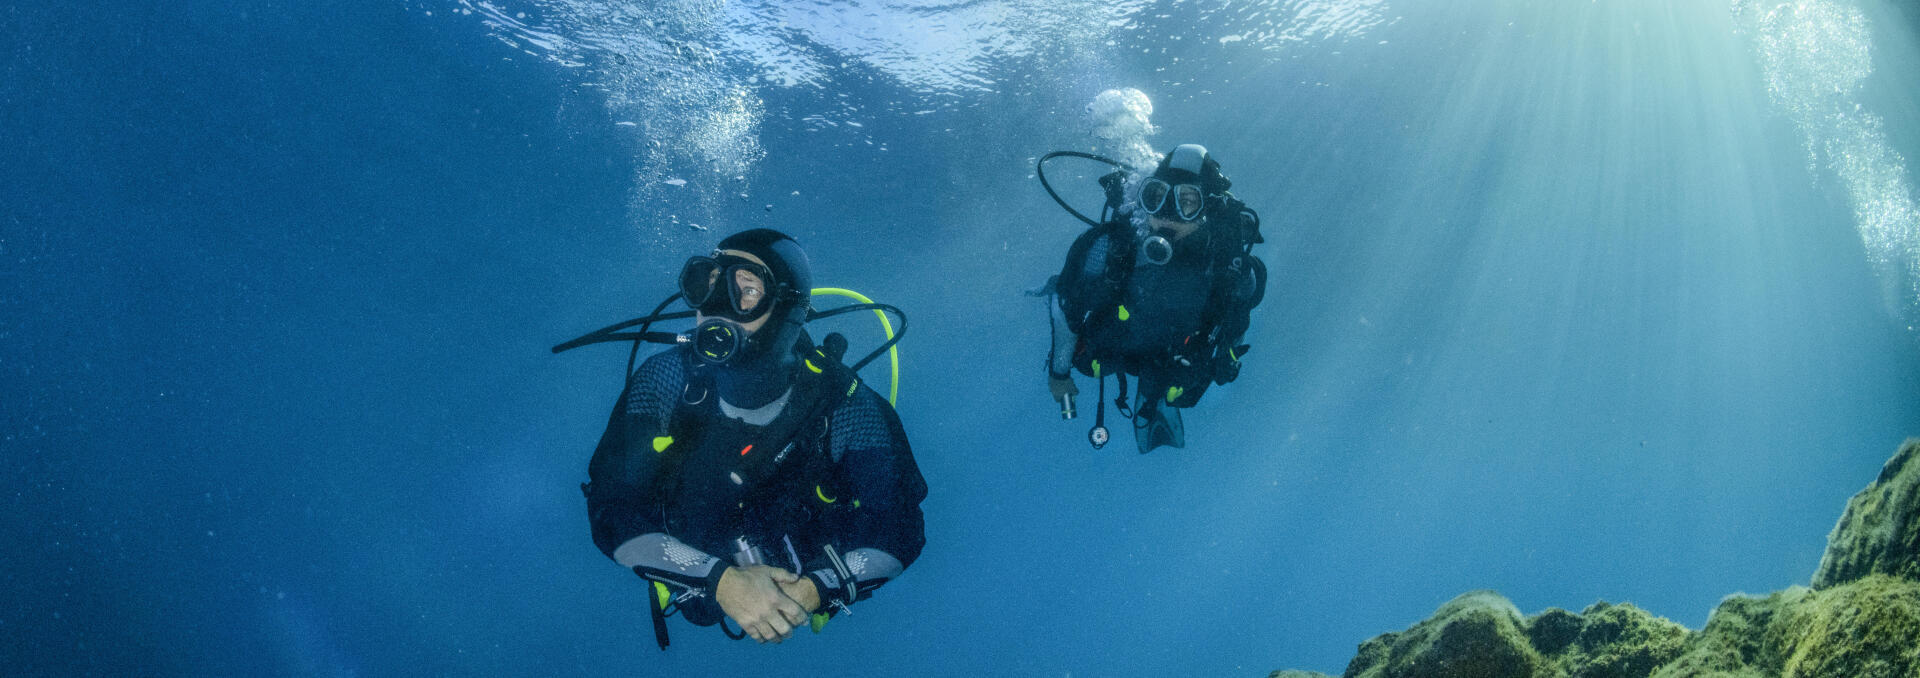 conseil astuces lutter contre le froid plongée sous marine subea épave méditerranée le spahis